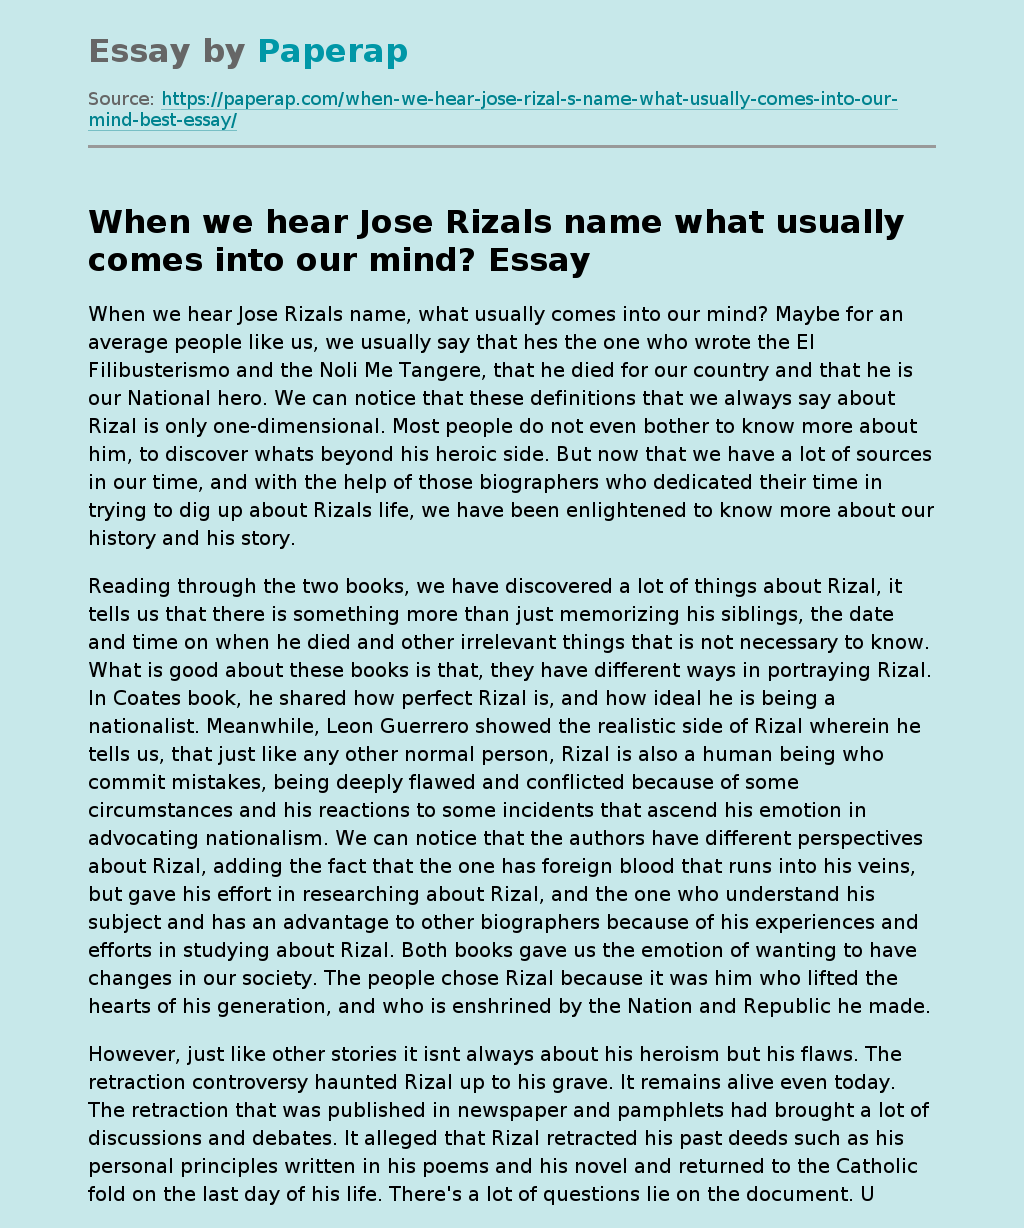 When we hear Jose Rizals name what usually comes into our mind?